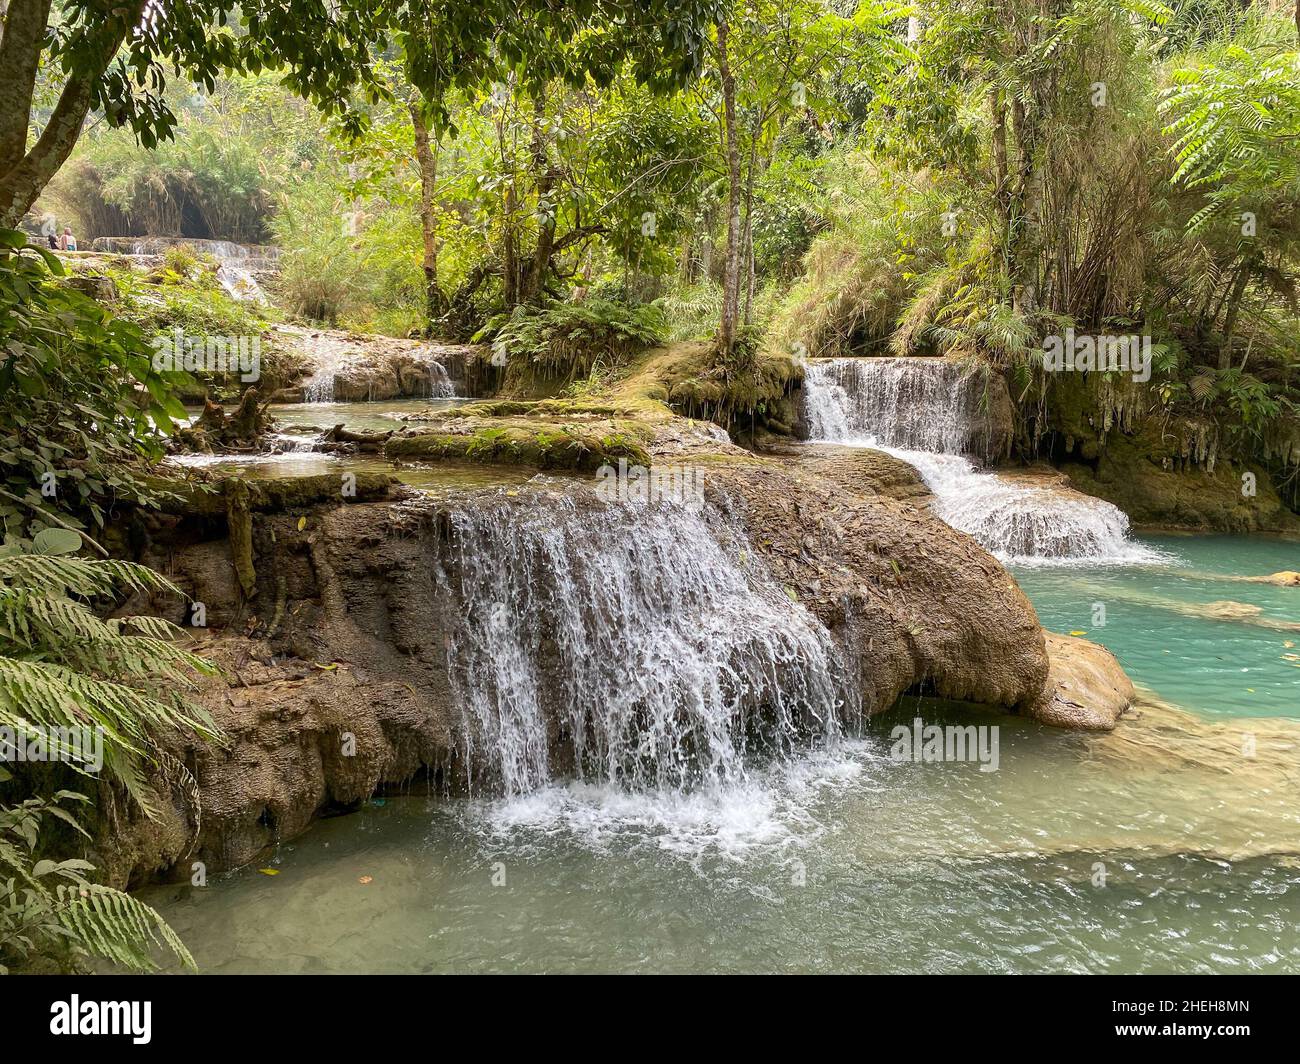 Kuang Si Waterfalls of Luang Phrabang, Laos at spring time. Stock Photo